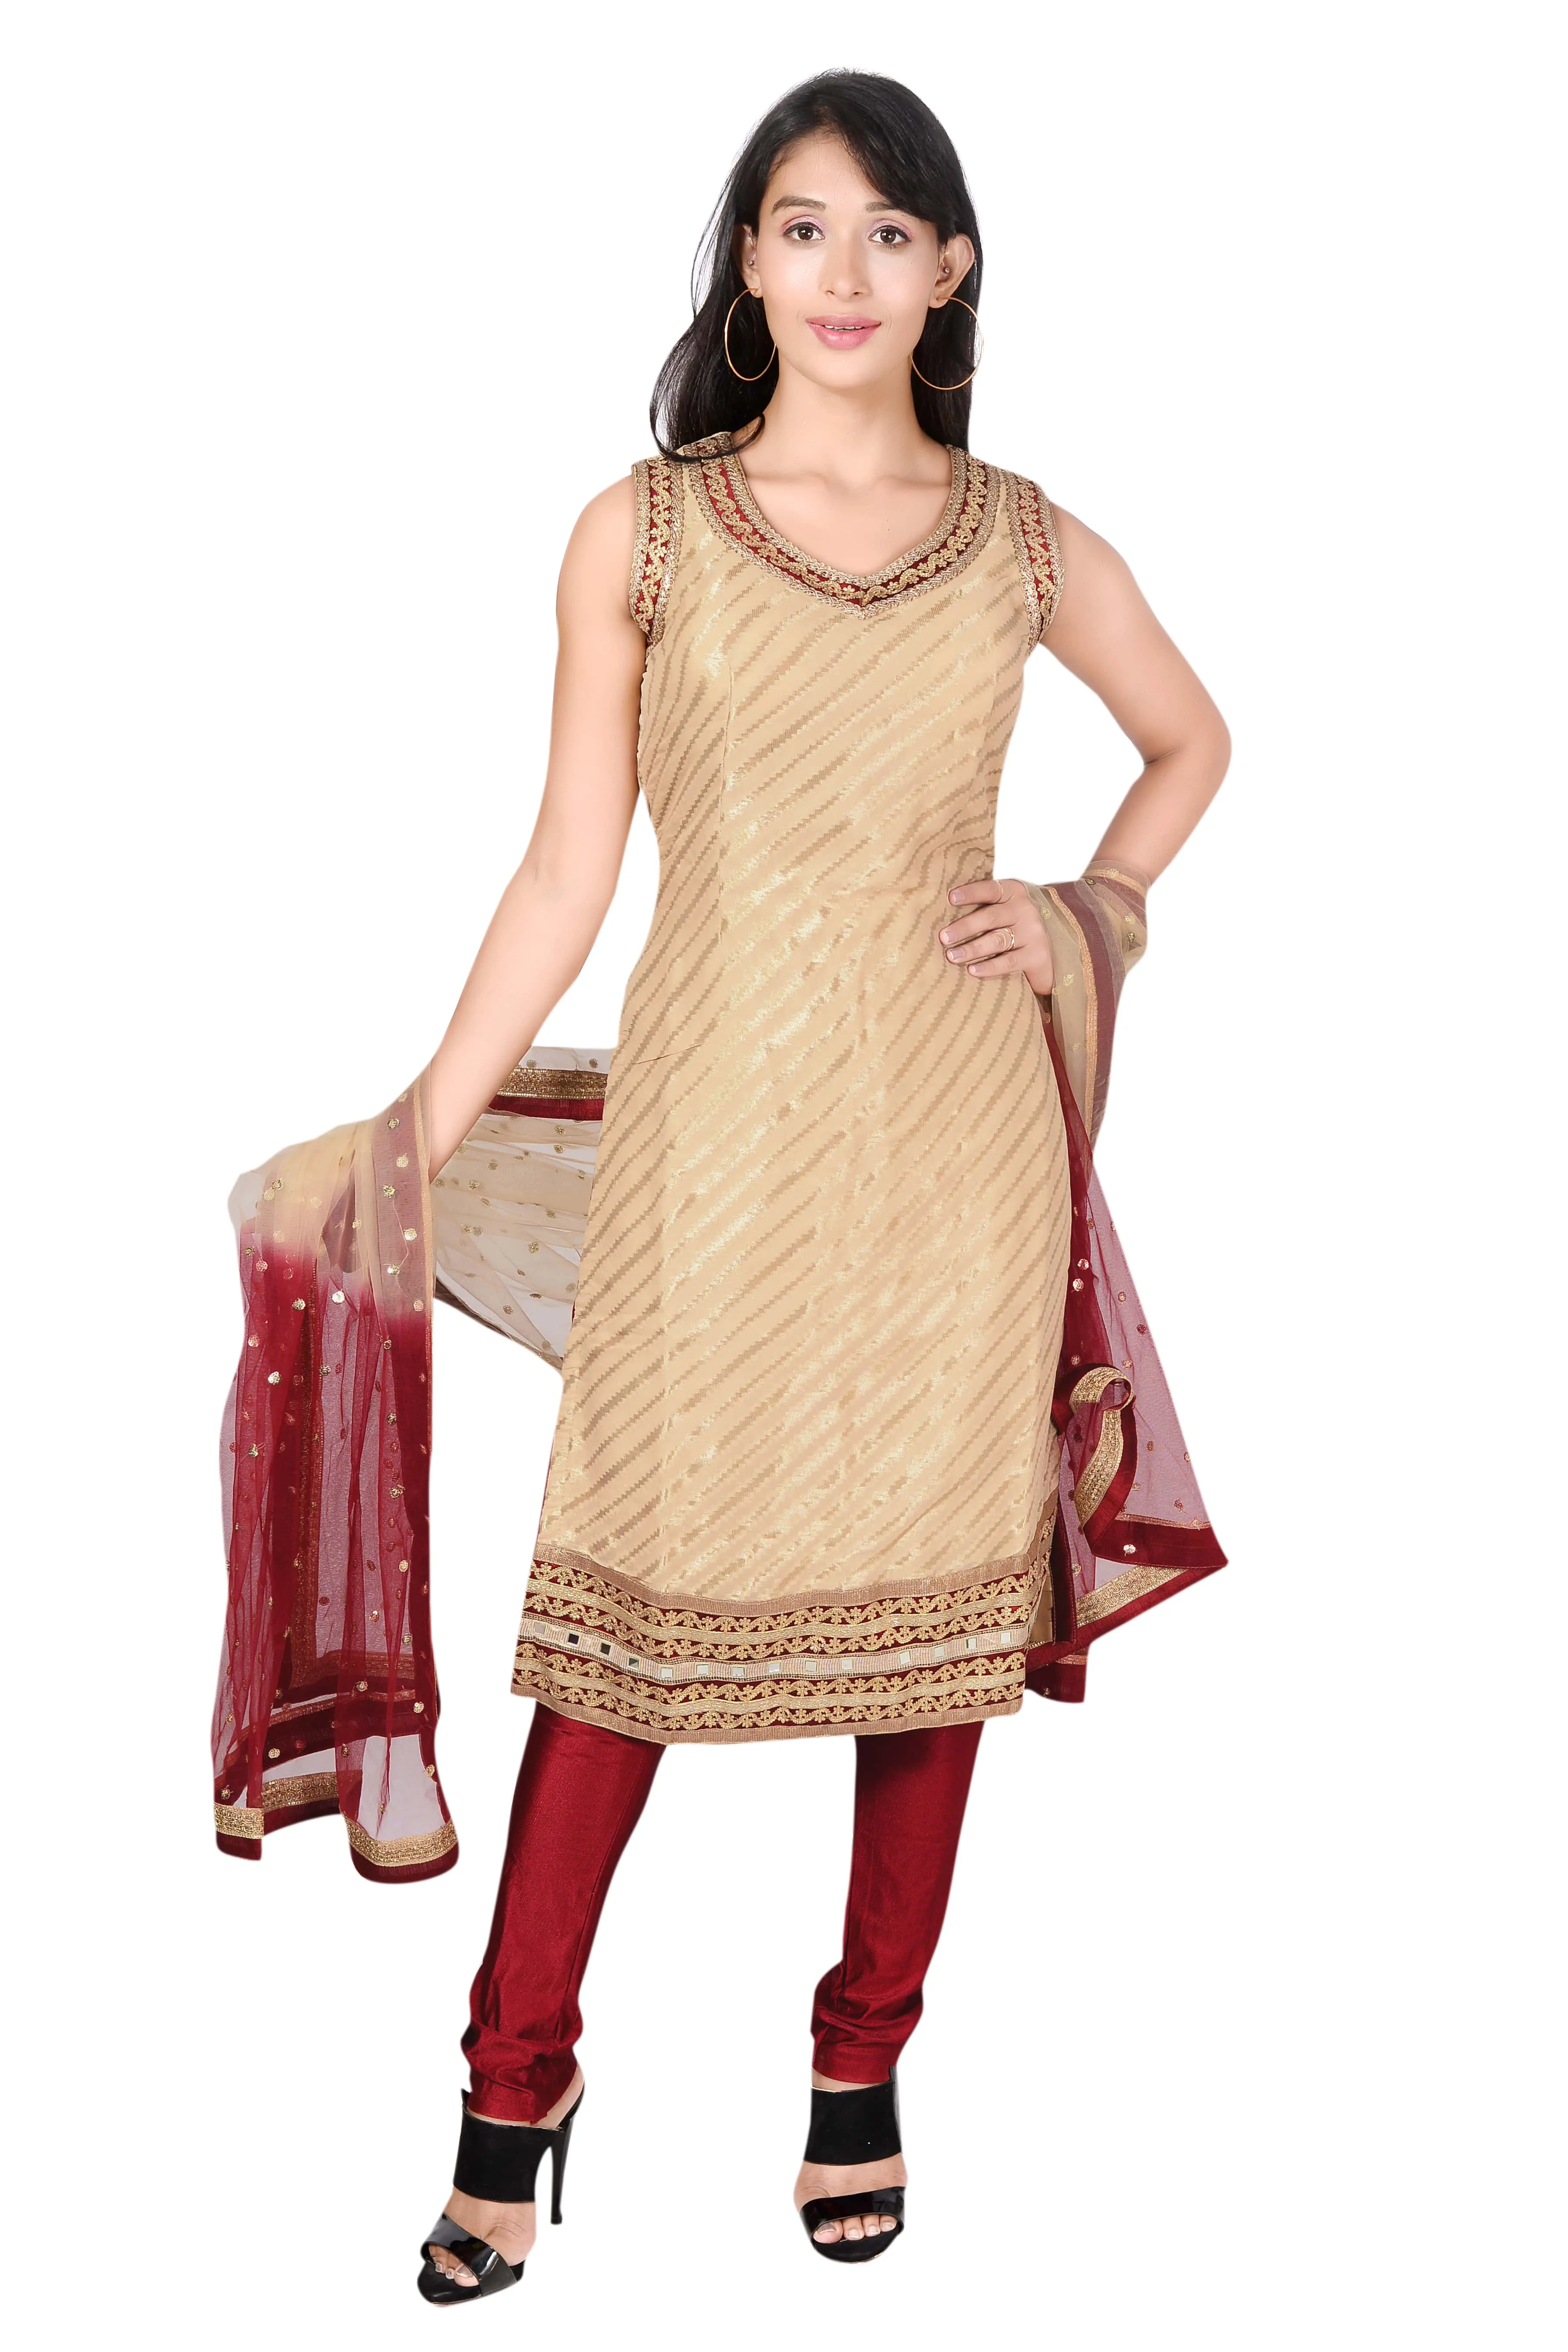 All Color Ladies Punjabi Salwar Suit at Best Price in Mumbai | Tip Top  Garments